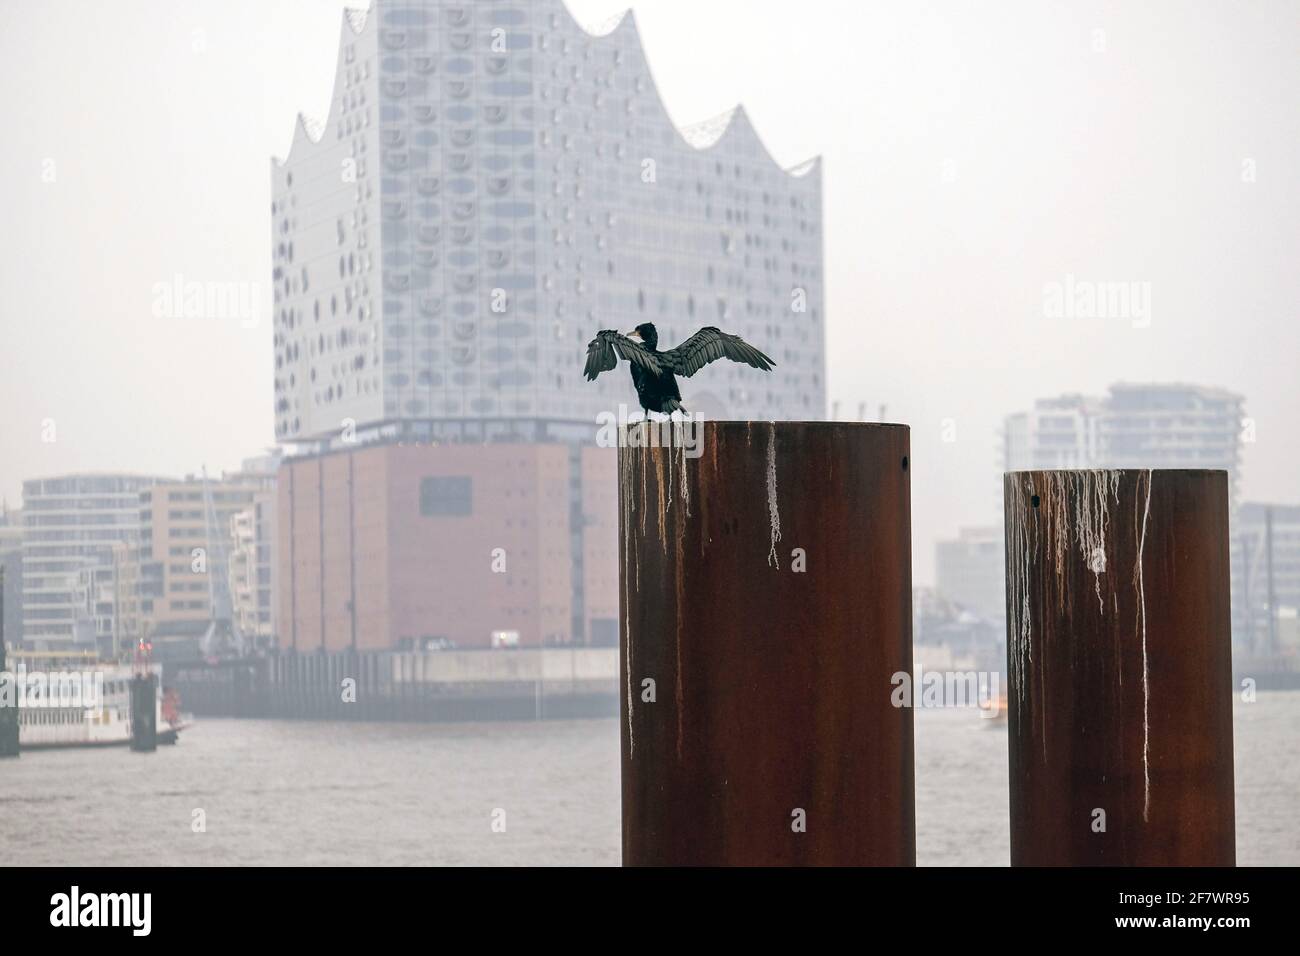 25.11.2018, Hamburg, Deutschland - ein Kormoran hat seine Fluegel zum Trocknen ausgebreitet auf einem Pfahl am Ufer der Elbe in Hamburg gegenueber der Stock Photo